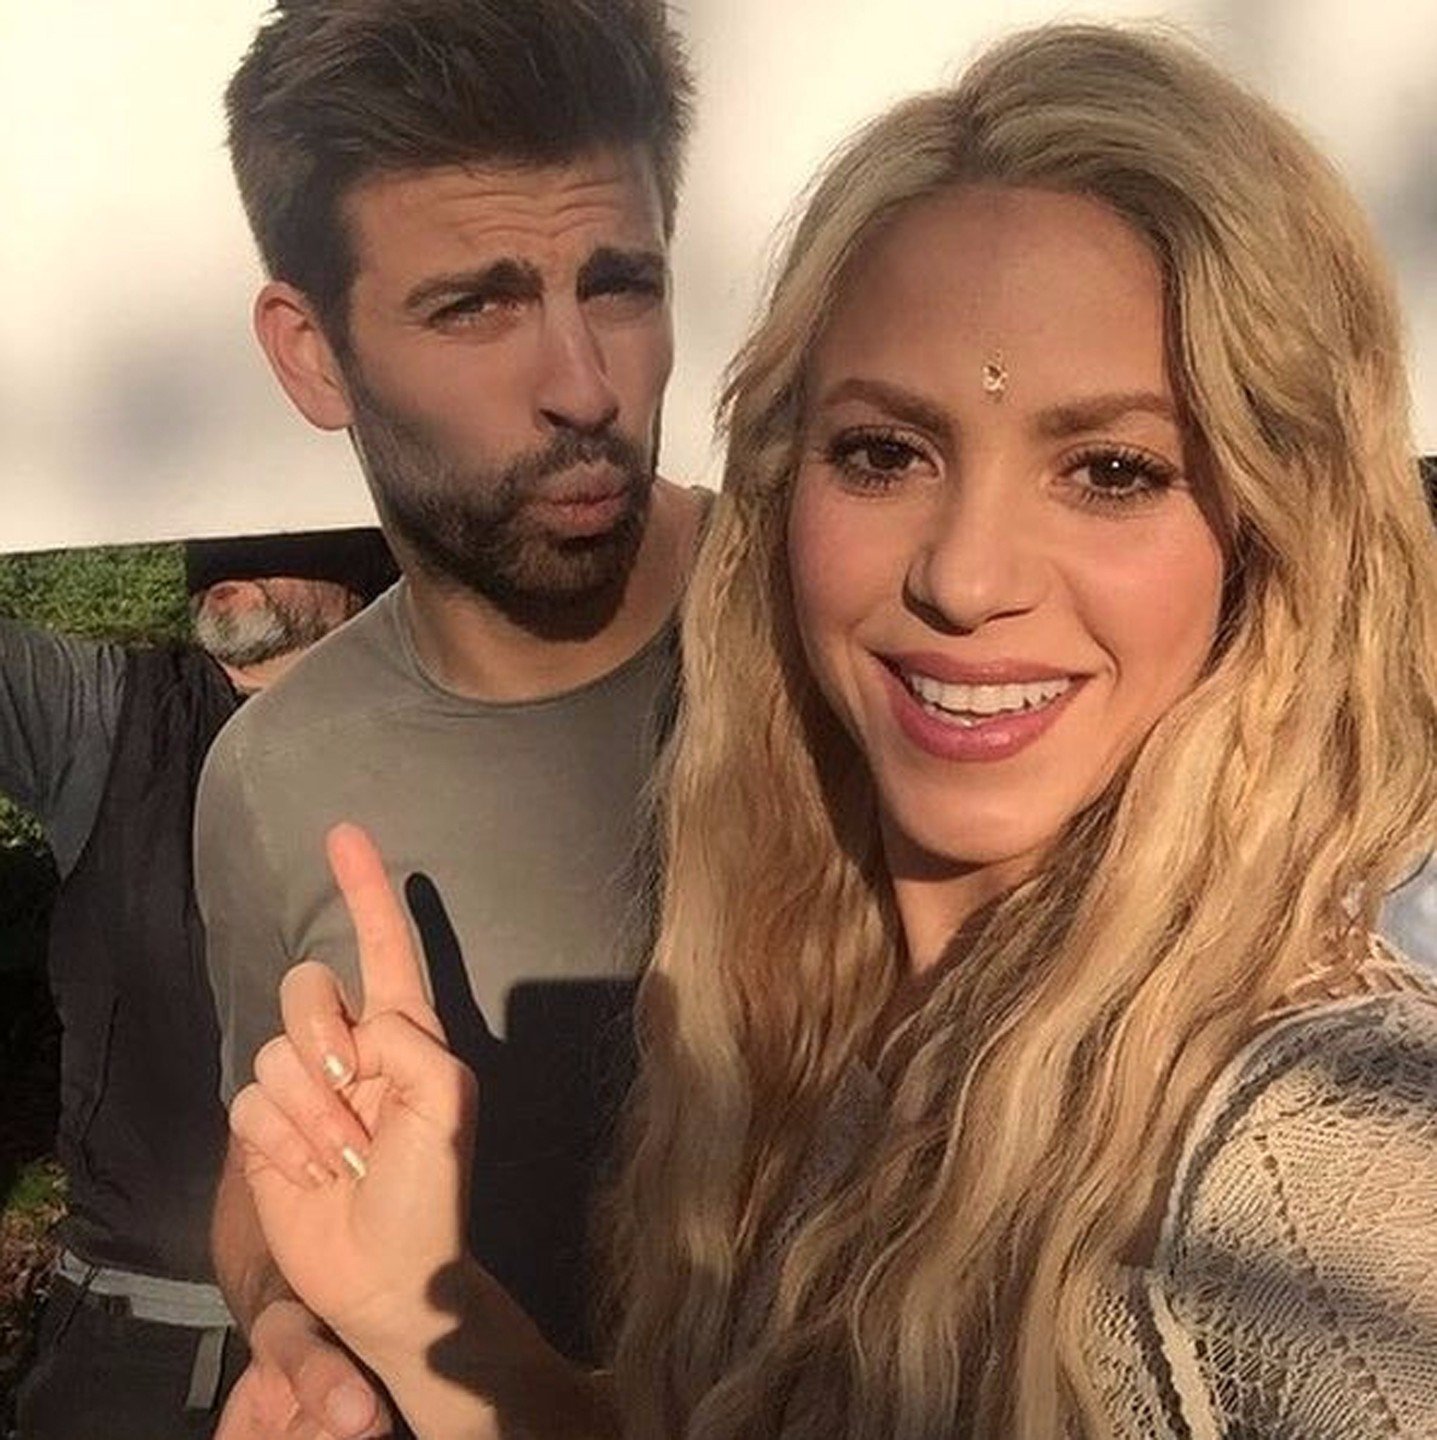 Shakira, după ultima întâlnire cu Pique: “A izbucnit în lacrimi! Nu a fost dispusă să…” | GALERIE FOTO